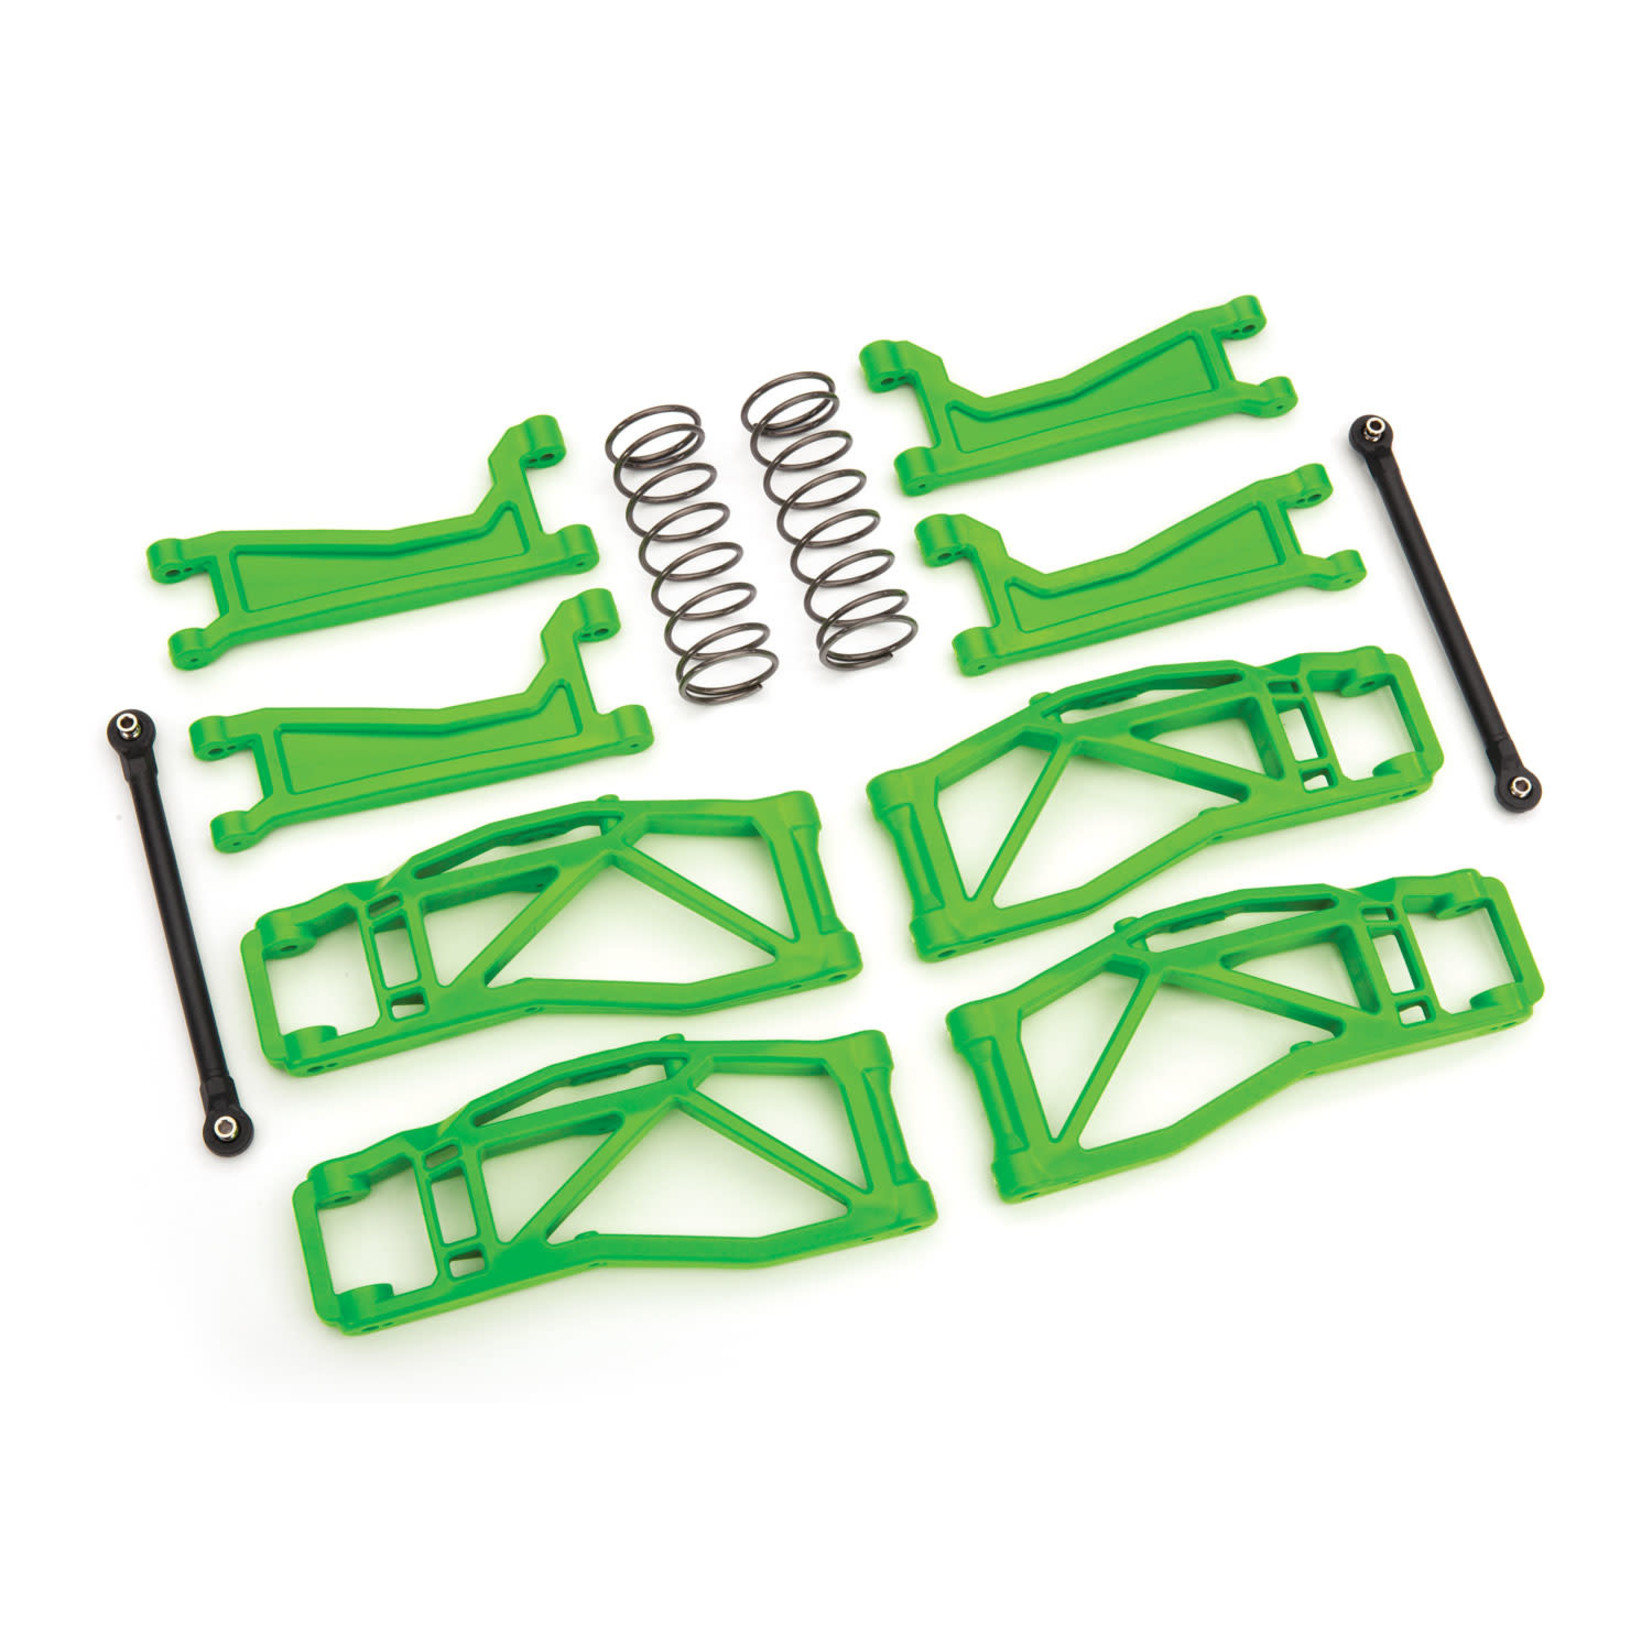 Traxxas Traxxas WideMaxx Suspension Kit (Green) #8995G